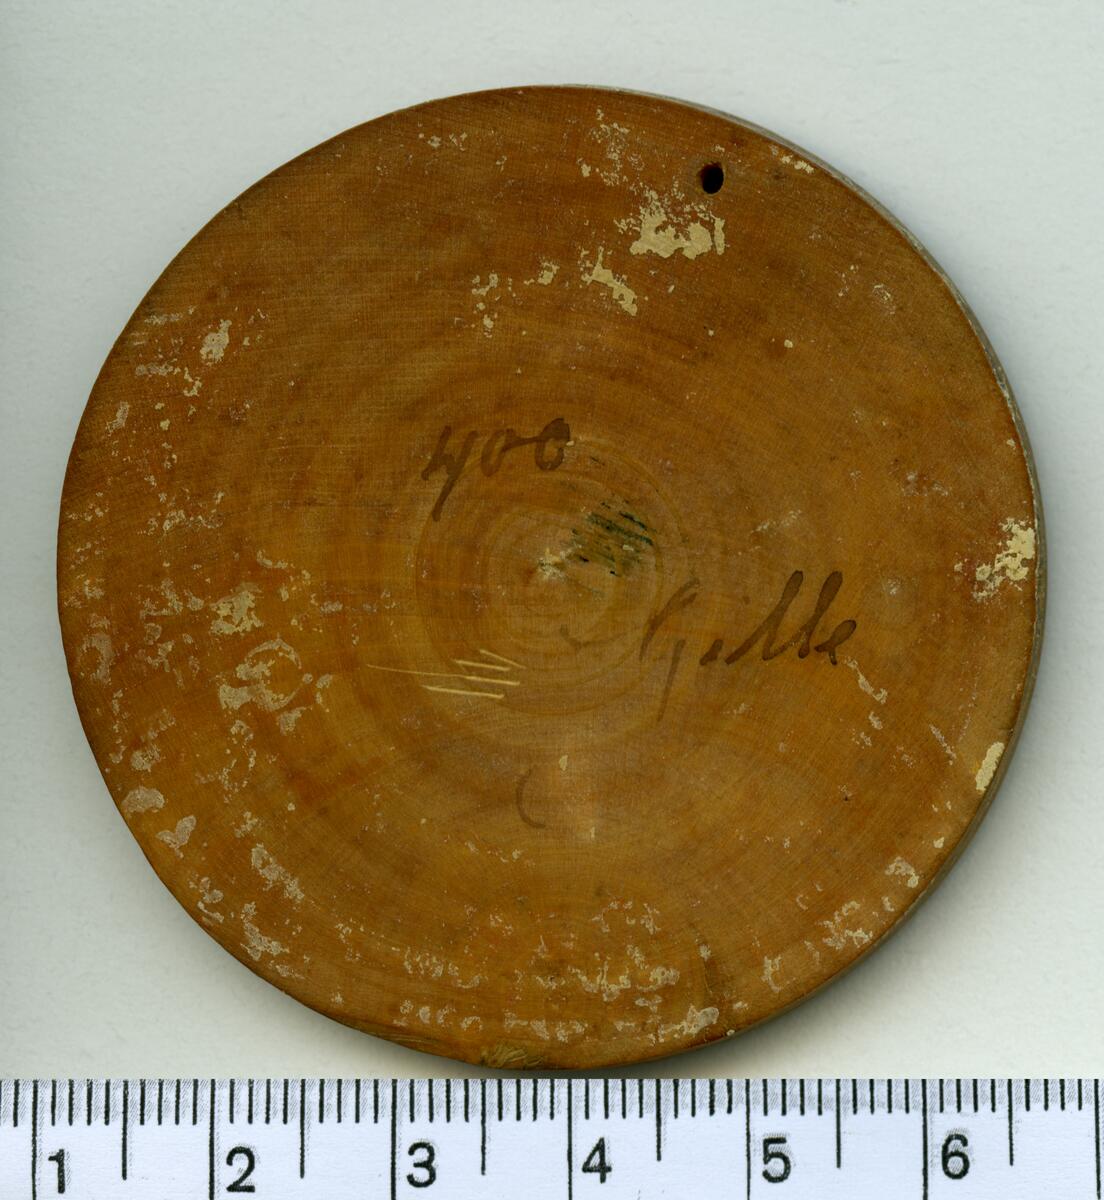 Modell till minnespeng i trä, visande Karl XI:s bröstbild.

Åtsida inskription: CAROLUS XI D G REX SUECI

Frånsida inskription: -